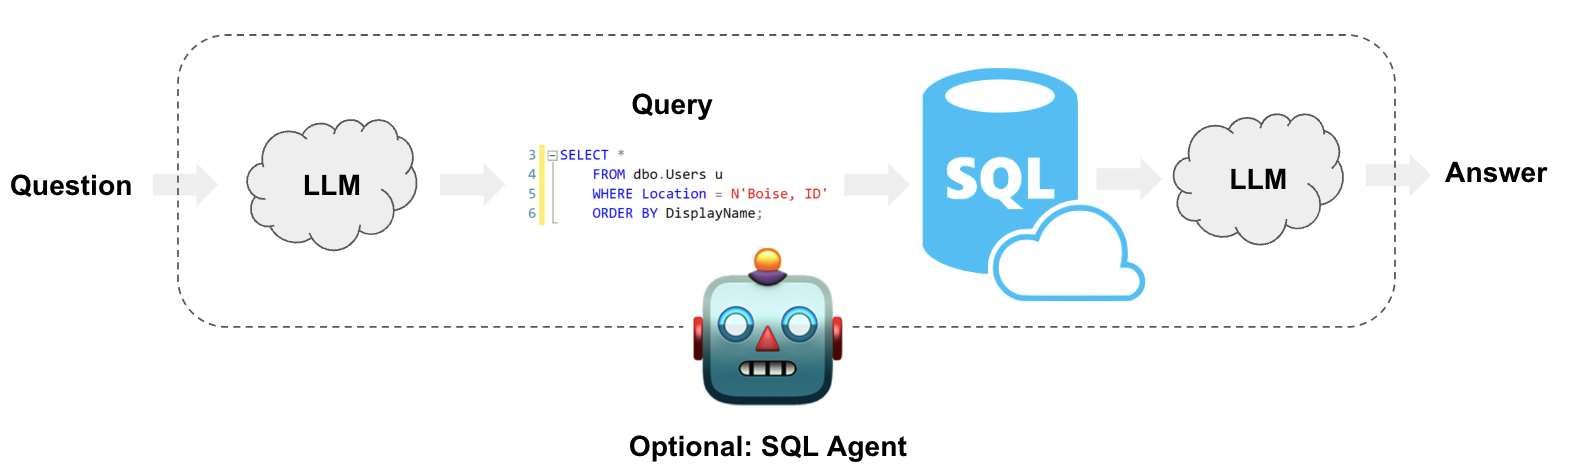 SQL Use Case Diagram